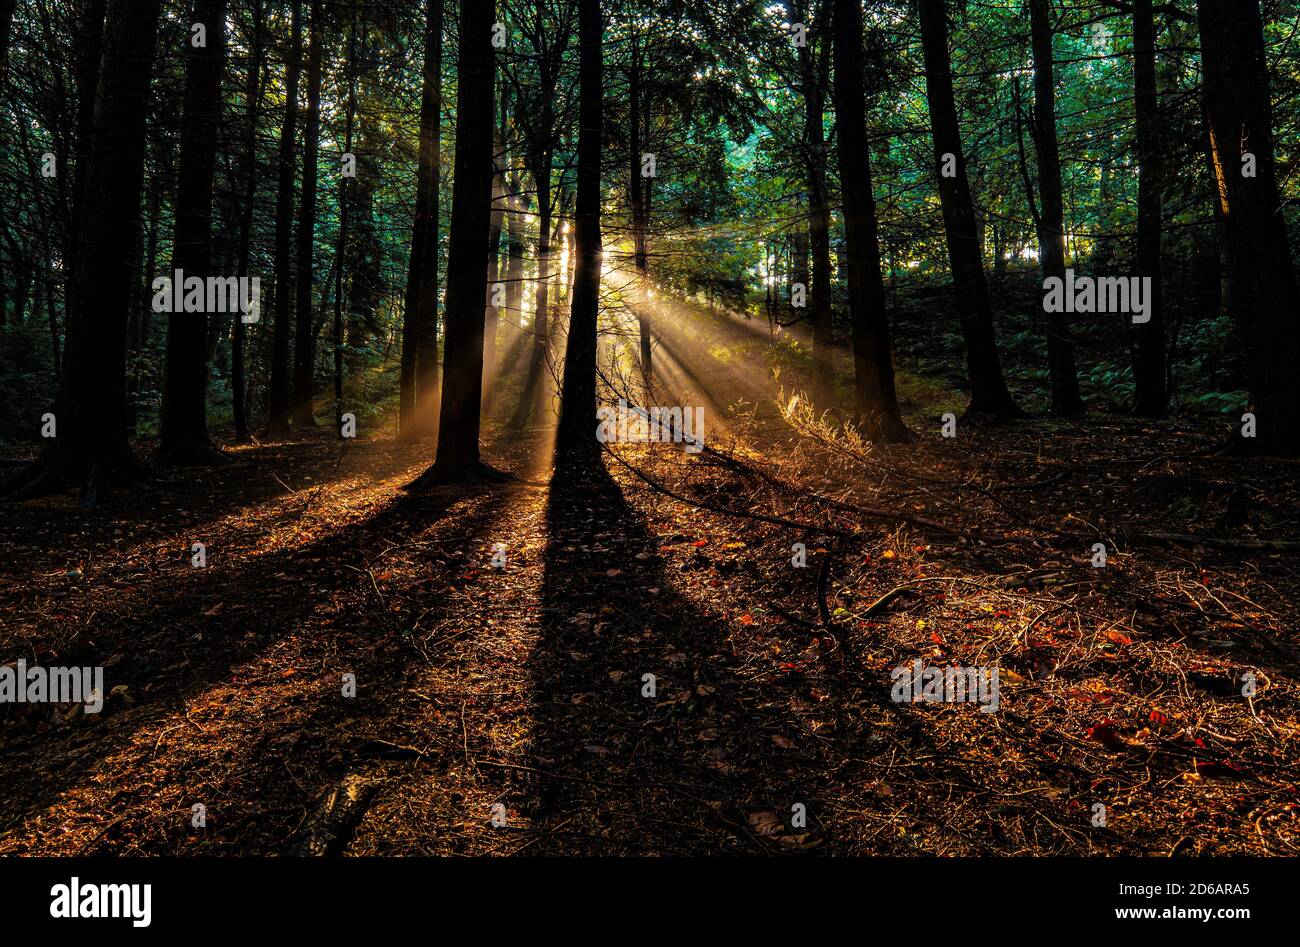 Waldbäume von der aufgehenden Sonne hinterleuchtet. Werfen lange Schatten auf den Waldboden Stockfoto